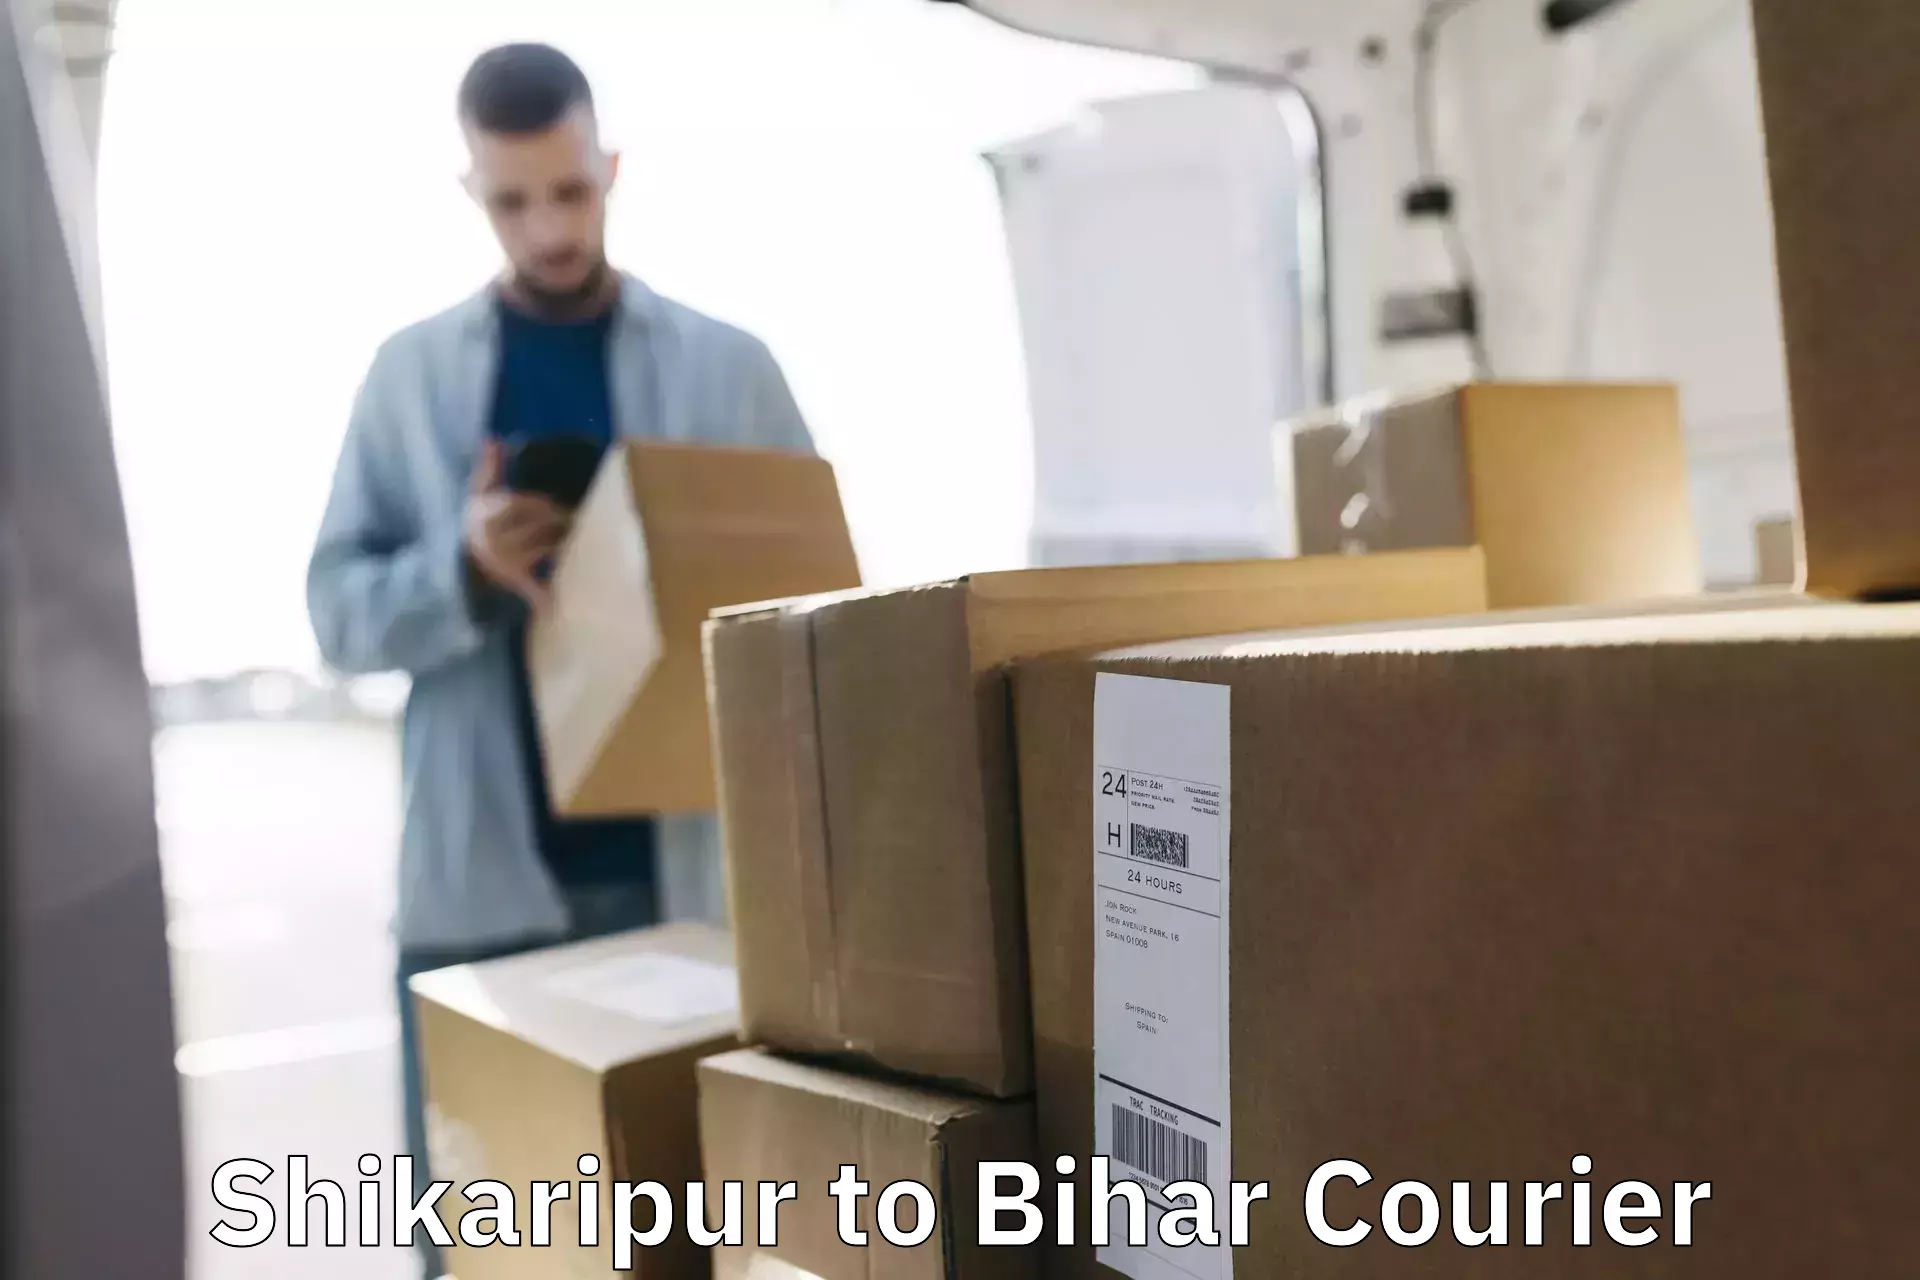 High-capacity parcel service Shikaripur to Barachati